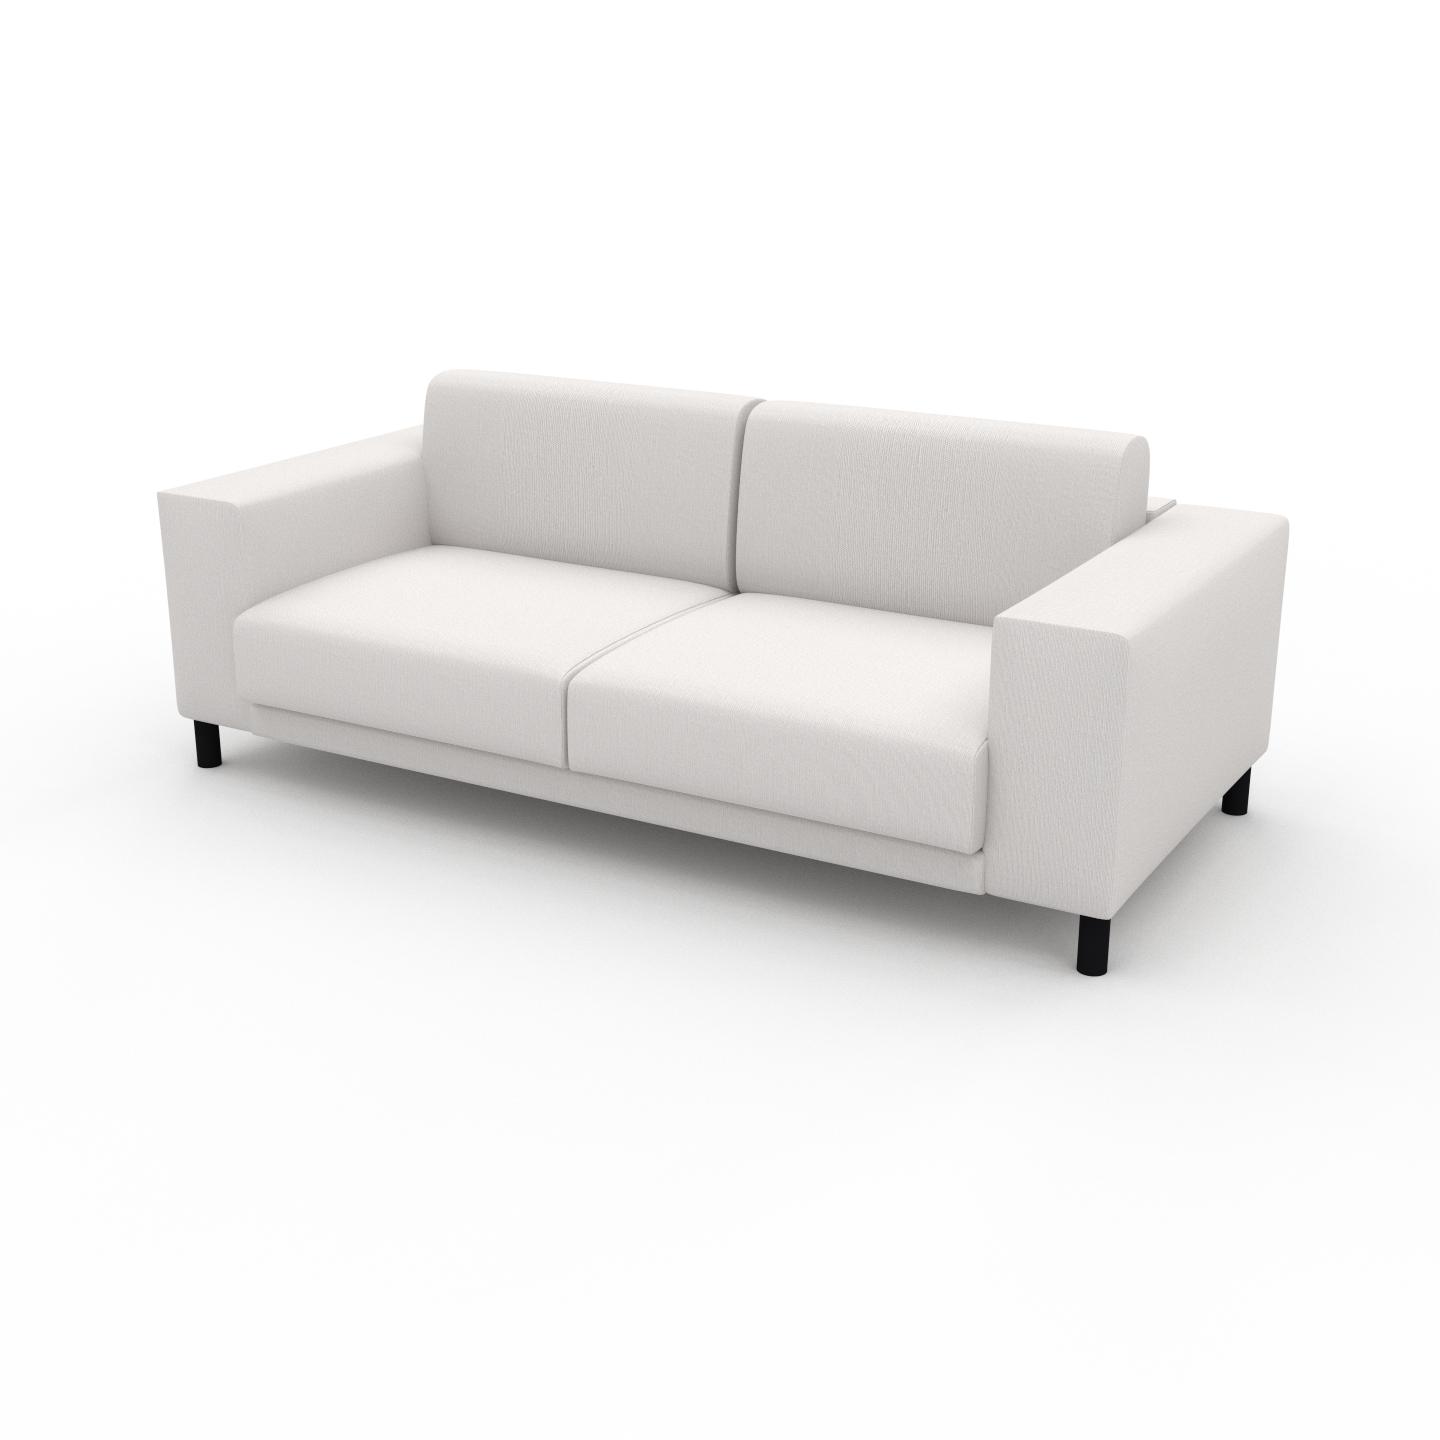 MYCS Sofa Weiß - Moderne Designer-Couch: Hochwertige Qualität, einzigartiges Design - 208 x 75 x 98 cm, Komplett anpassbar